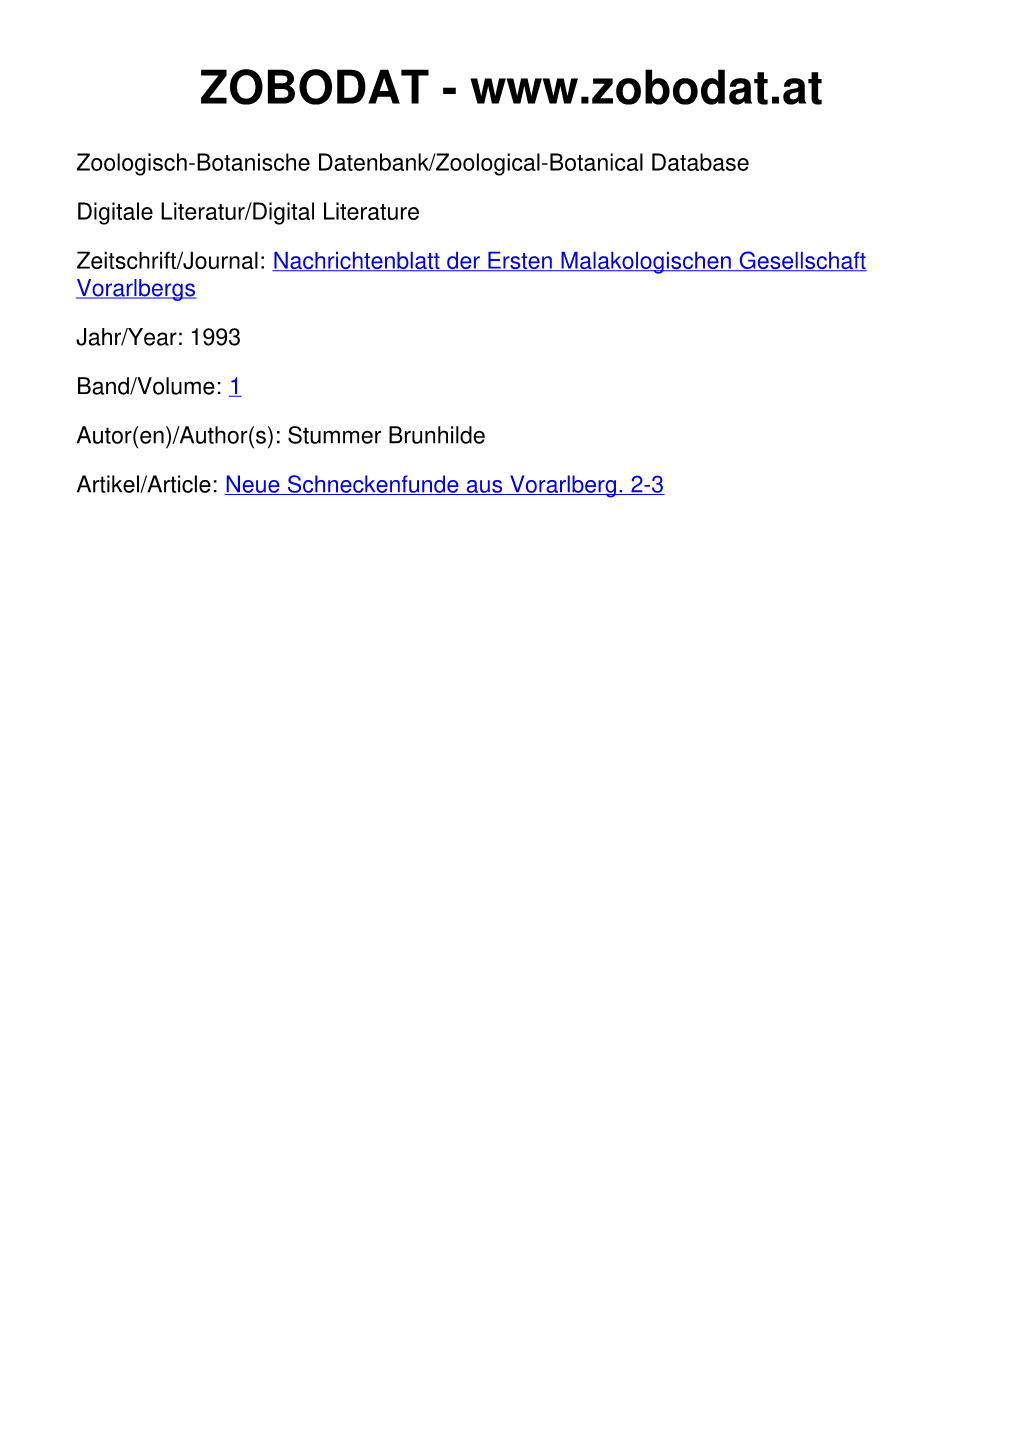 Neue Schneckenfunde Aus Vorarlberg. 2-3 ©Erste Vorarlberger Malakologische Gesellschaft, Download Unter Nachr.Bl